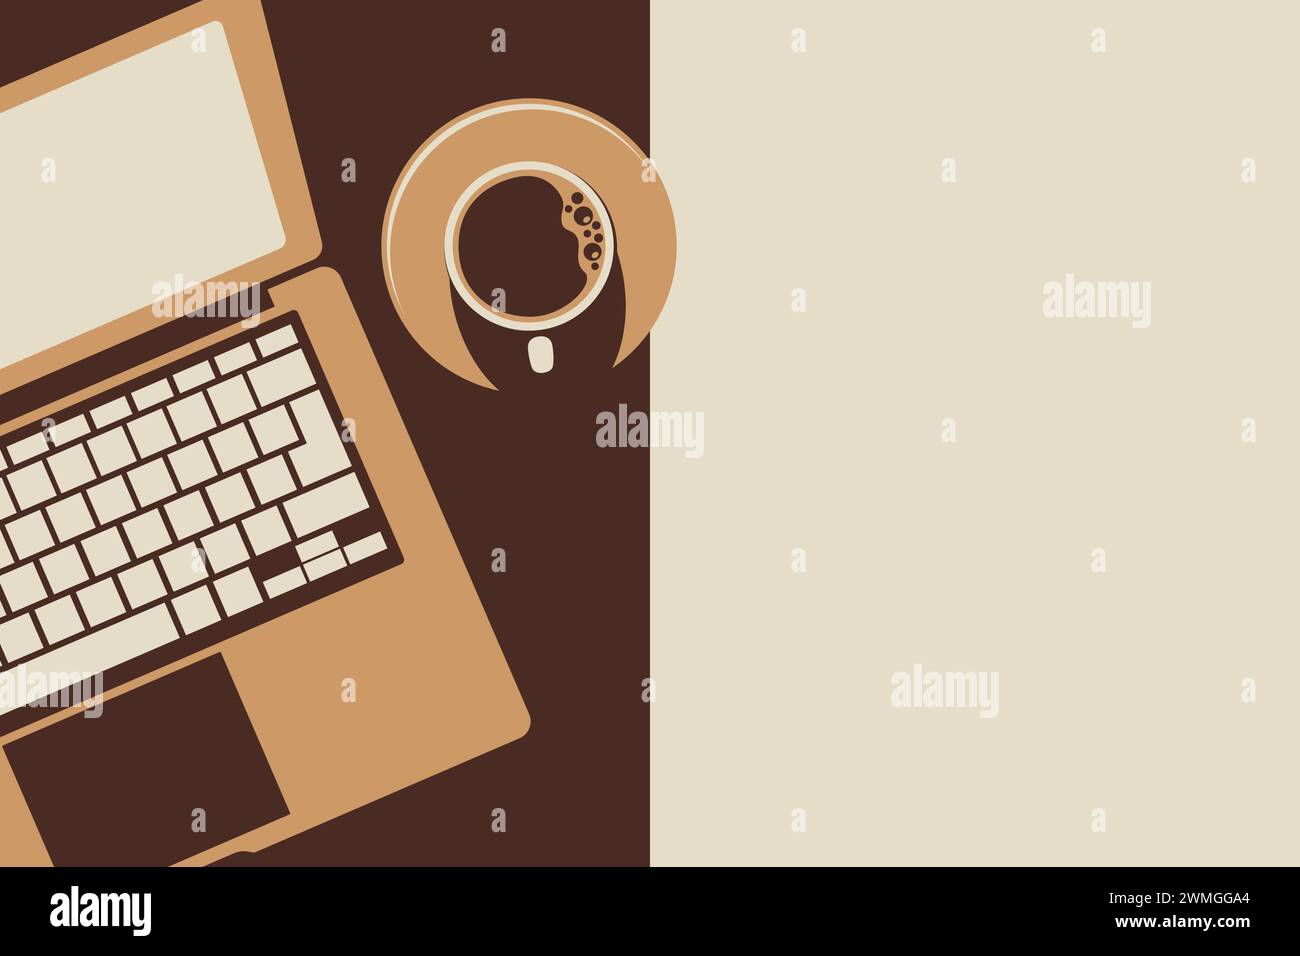 Illustration d'un ordinateur portable et d'un café avec une disposition d'espace vide sur le côté gauche Banque D'Images